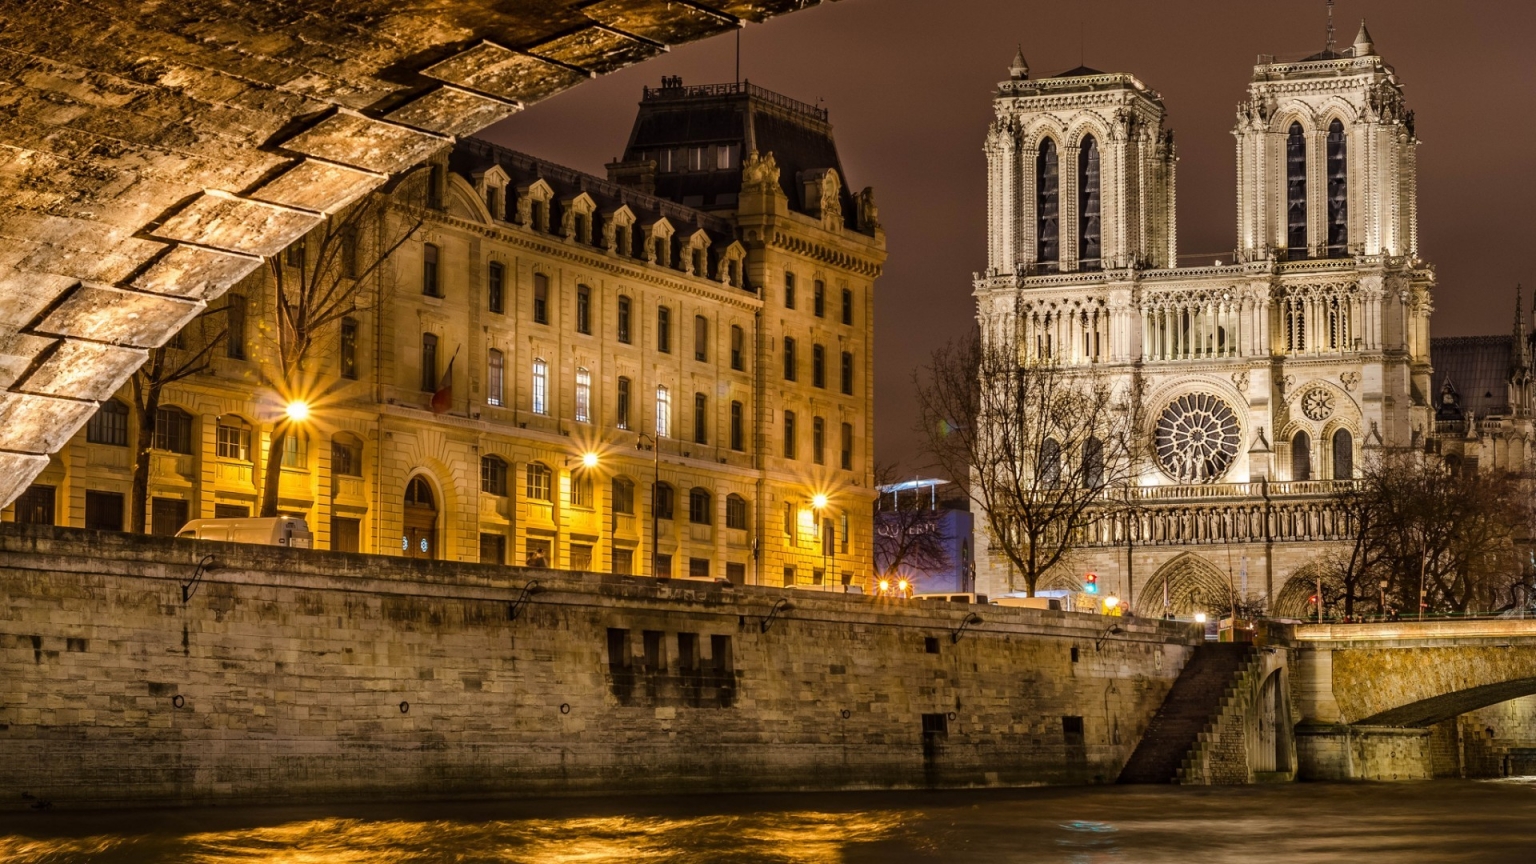 Notre Dame de Paris Front View for 1536 x 864 HDTV resolution